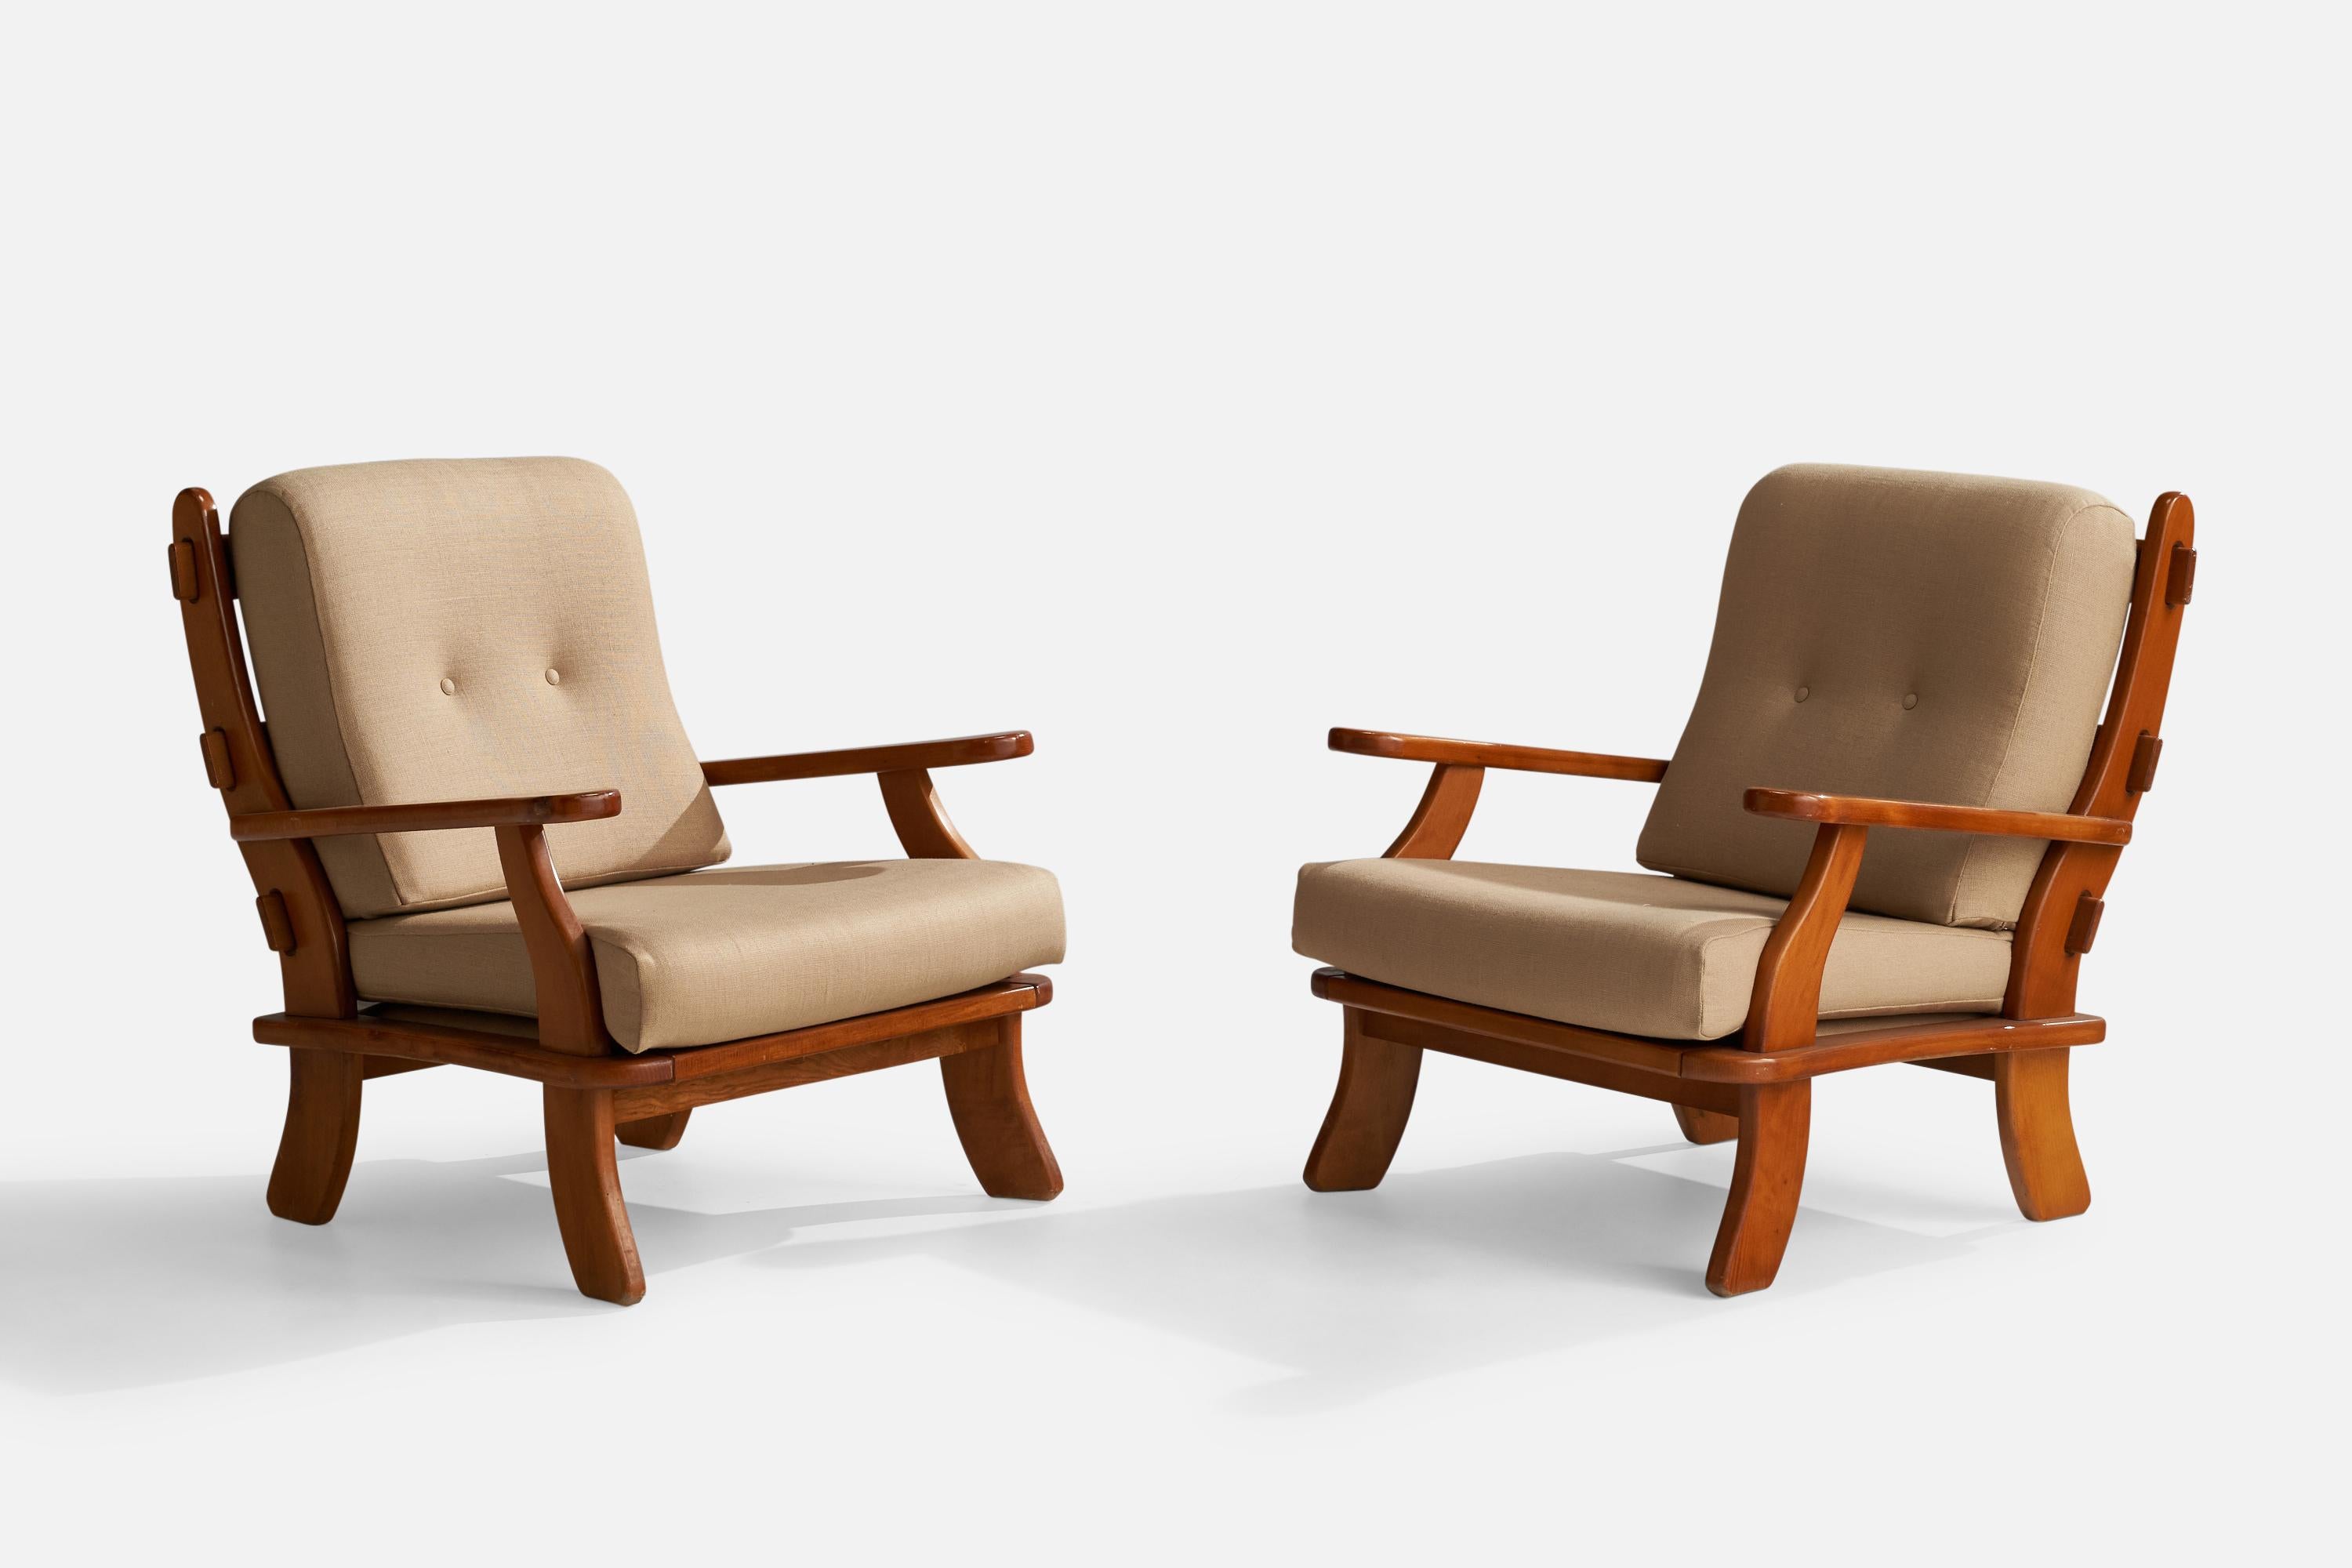 Paire de chaises longues en pin et tissu beige, conçues et produites en Italie, années 1970.

Hauteur de l'assise 16